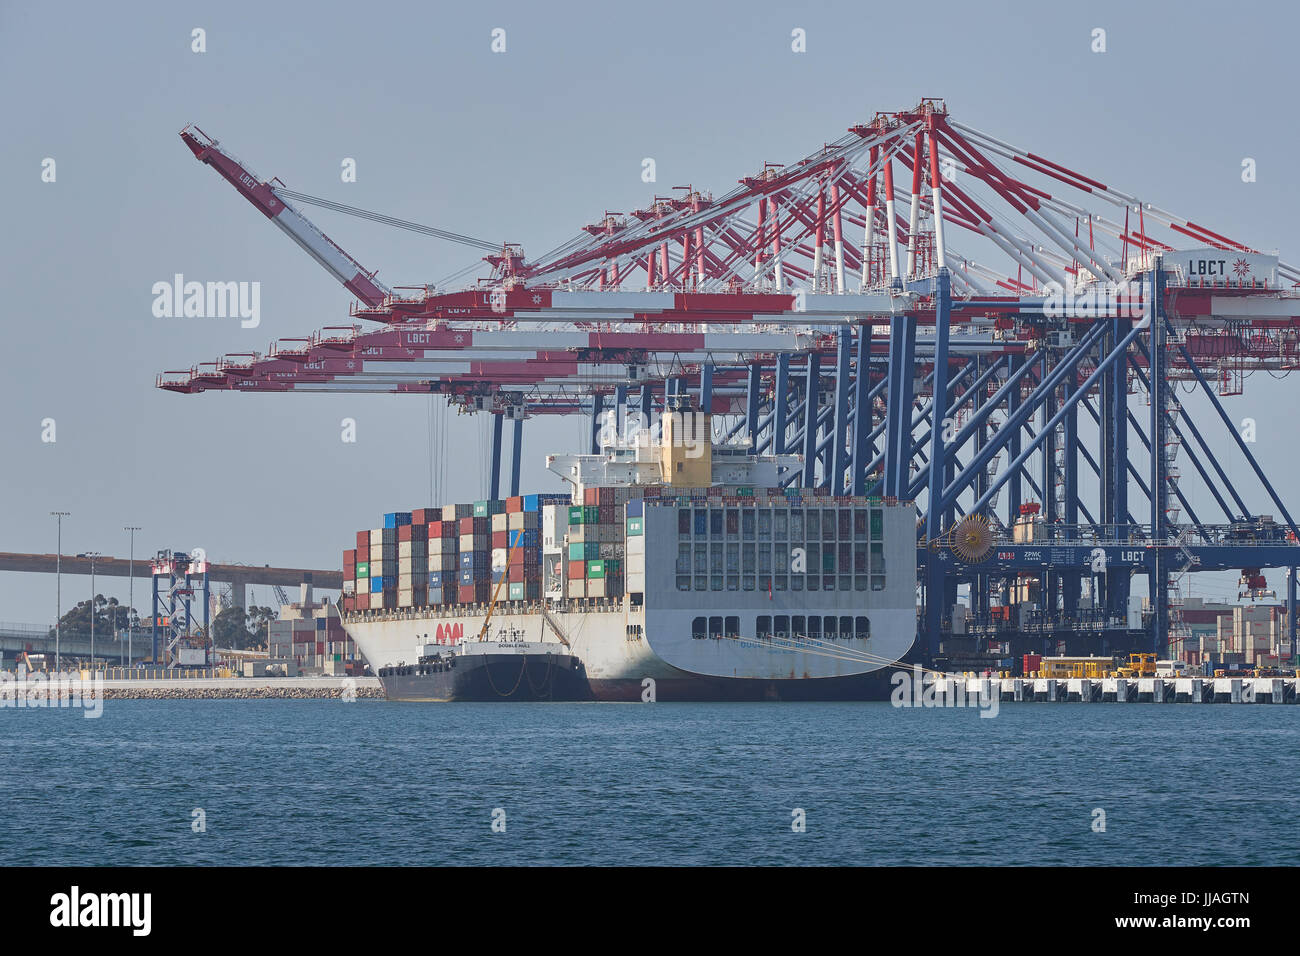 Containerschiff, OOCL LONG BEACH, Bunkern (Tanken), in den Hafen von Long Beach, Kalifornien, USA. Stockfoto